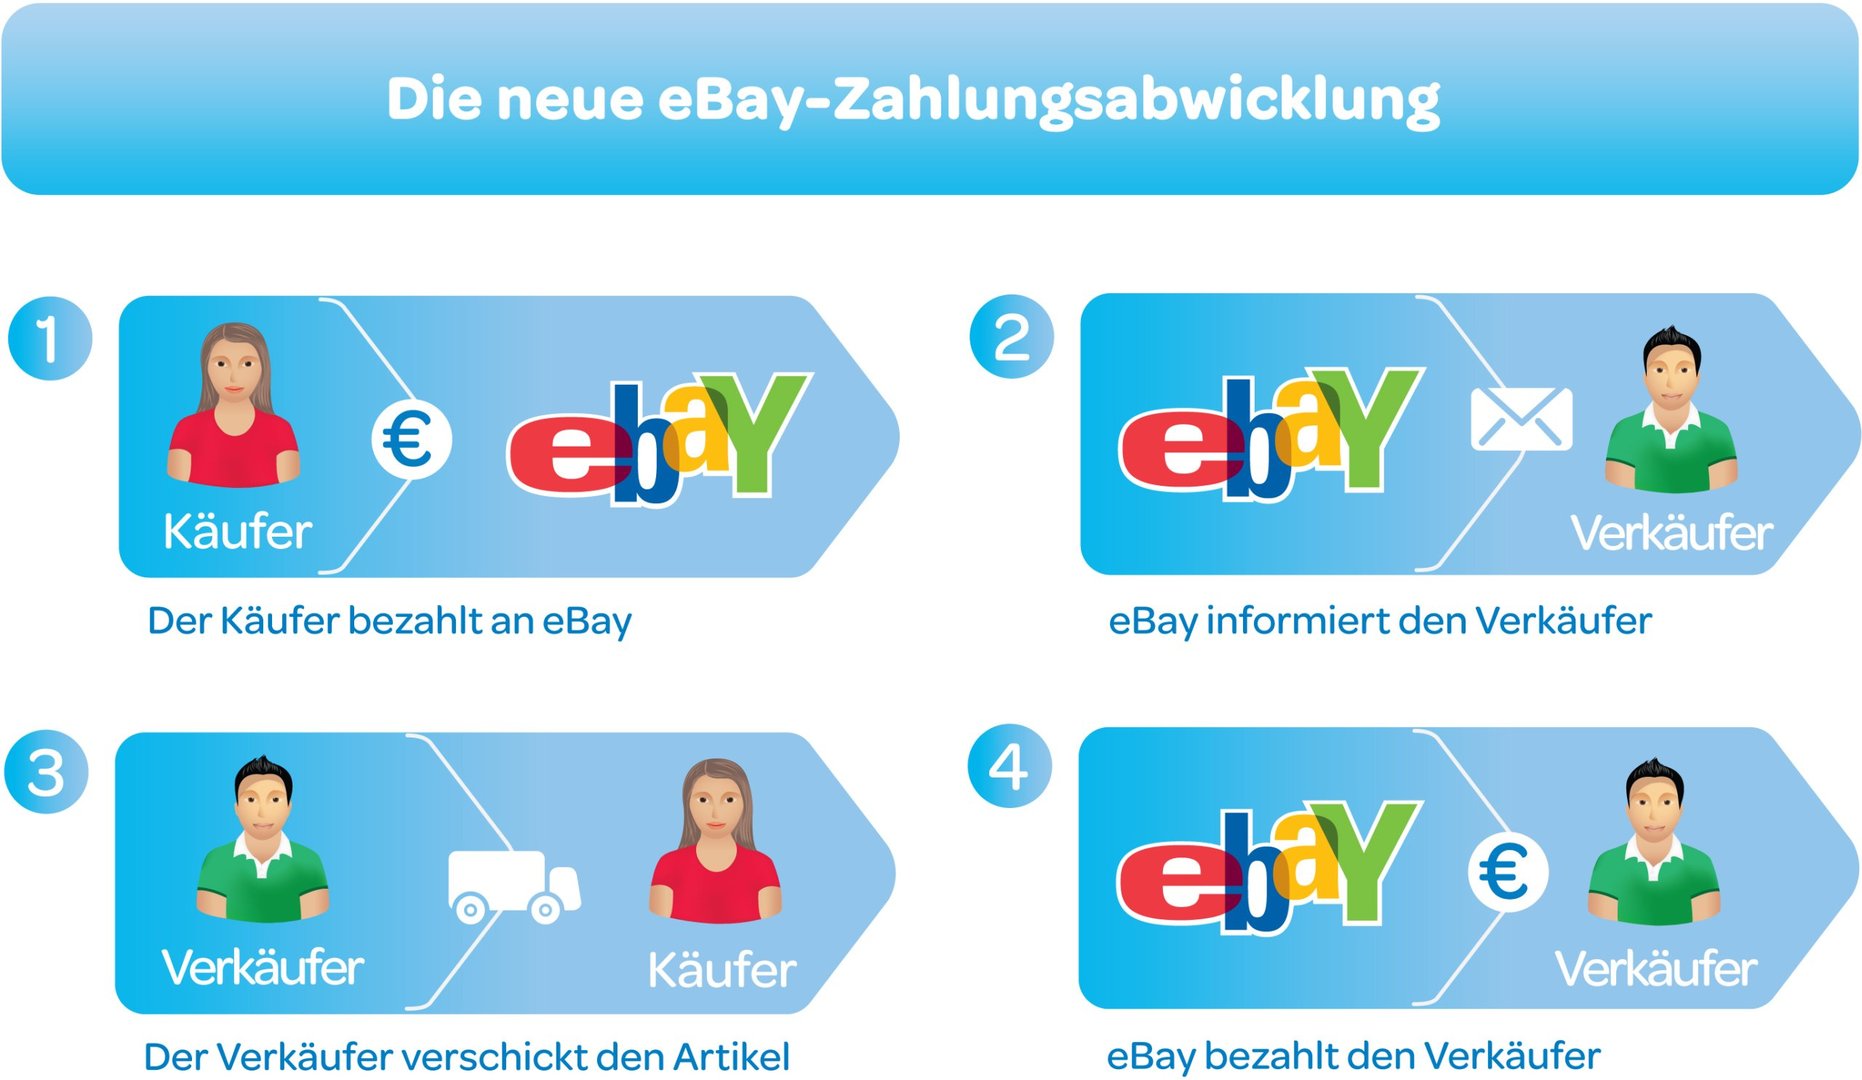 Die neue eBay-Zahlungsabwicklung